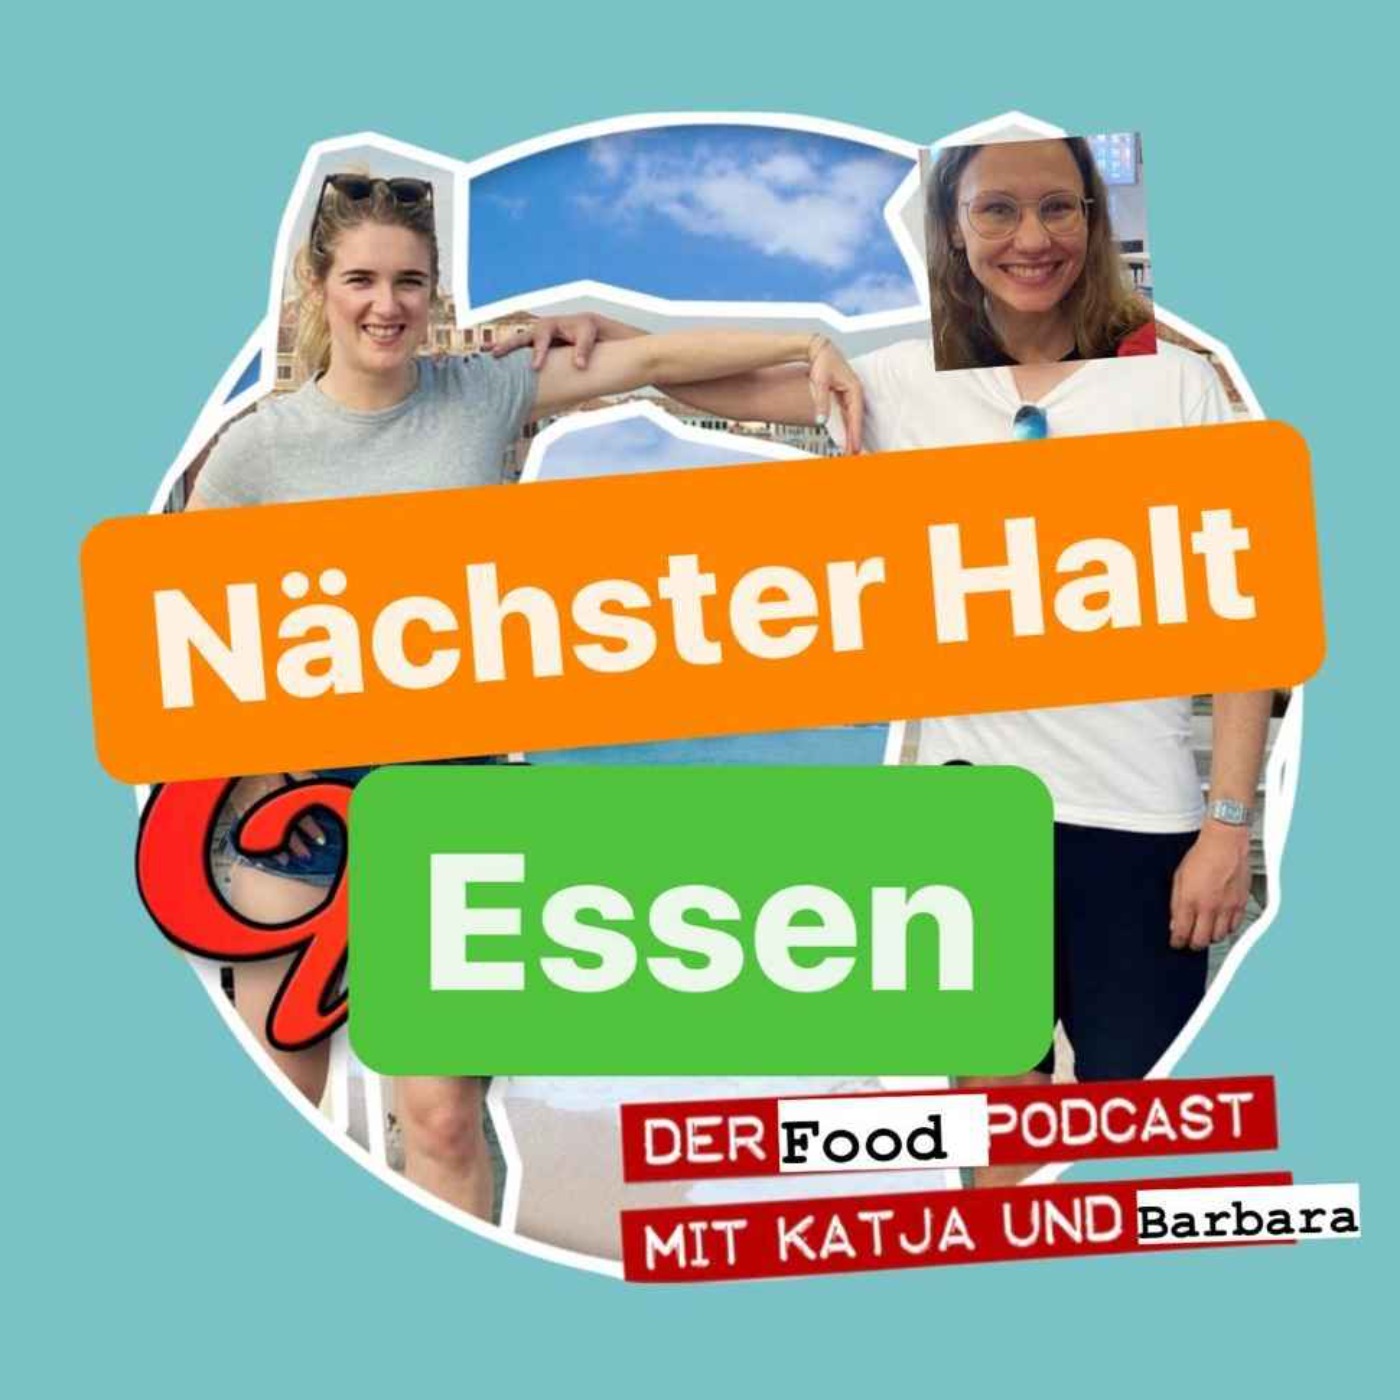 Nächster Halt Essen - Der Food Podcast - Folge 2: Liebe geht durch Magen